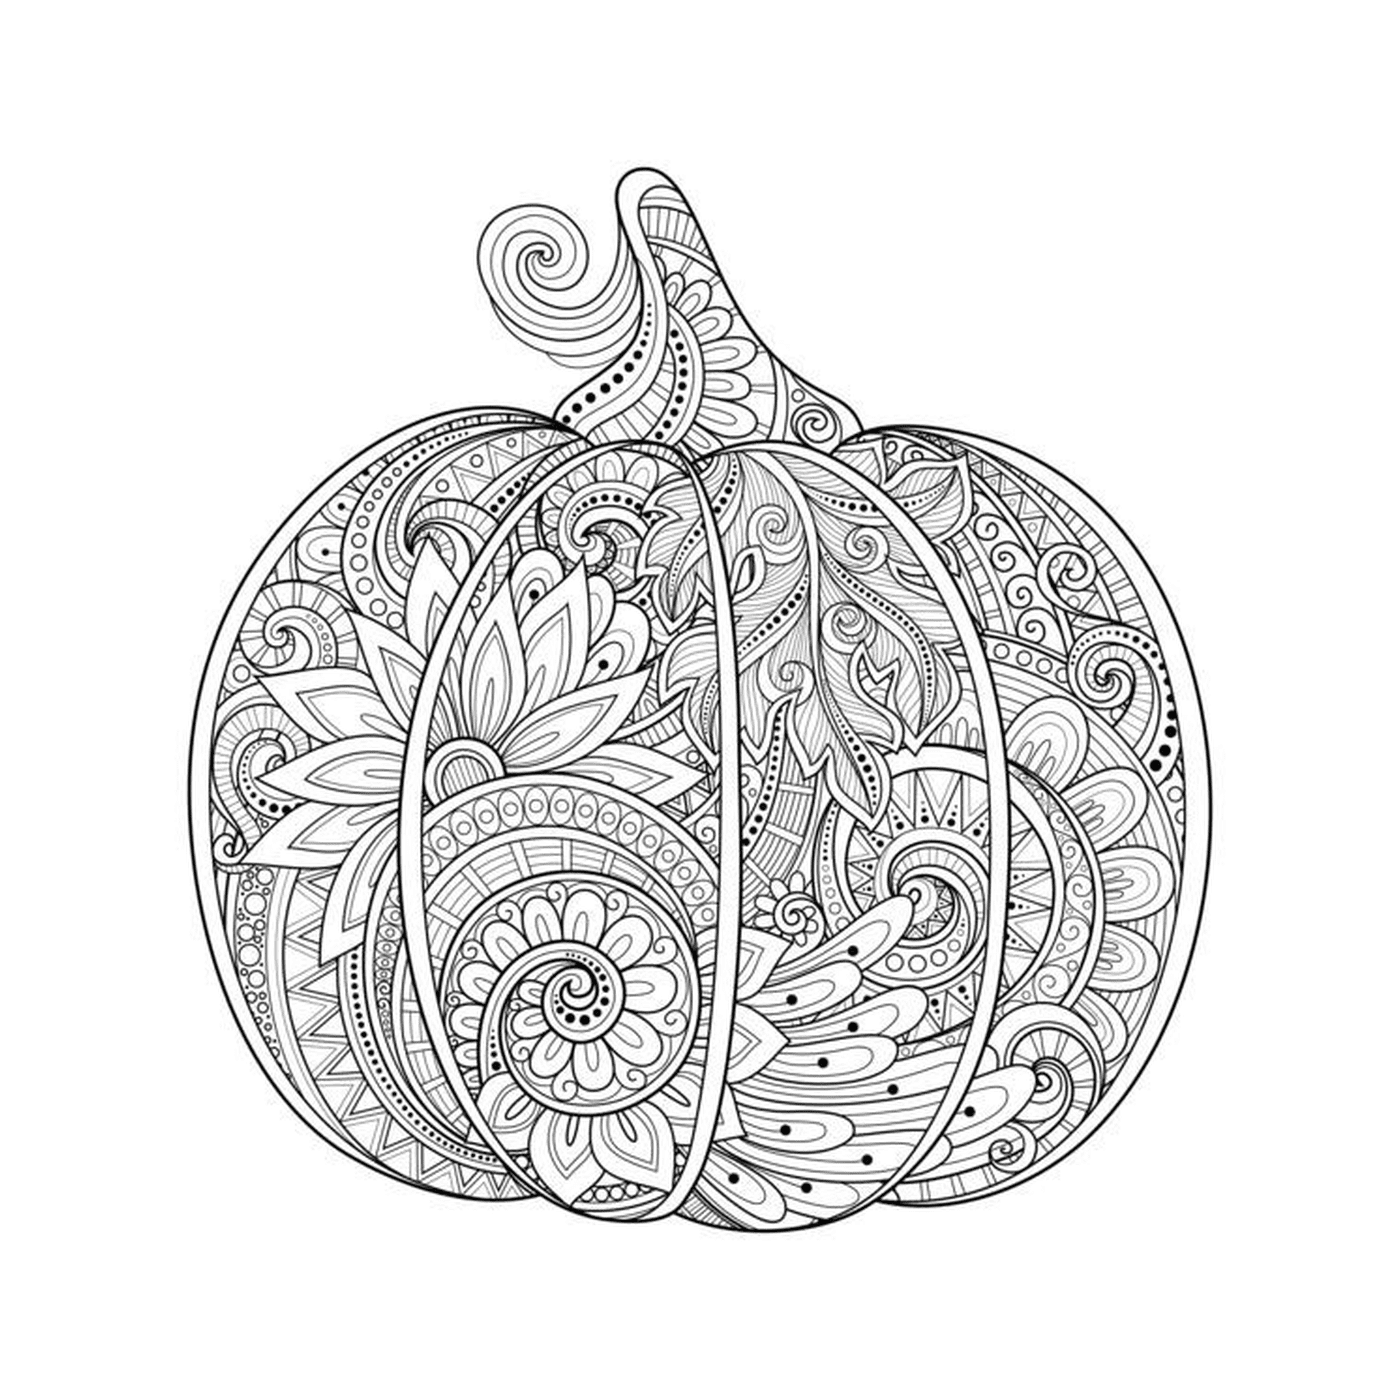  Zucca con disegni 